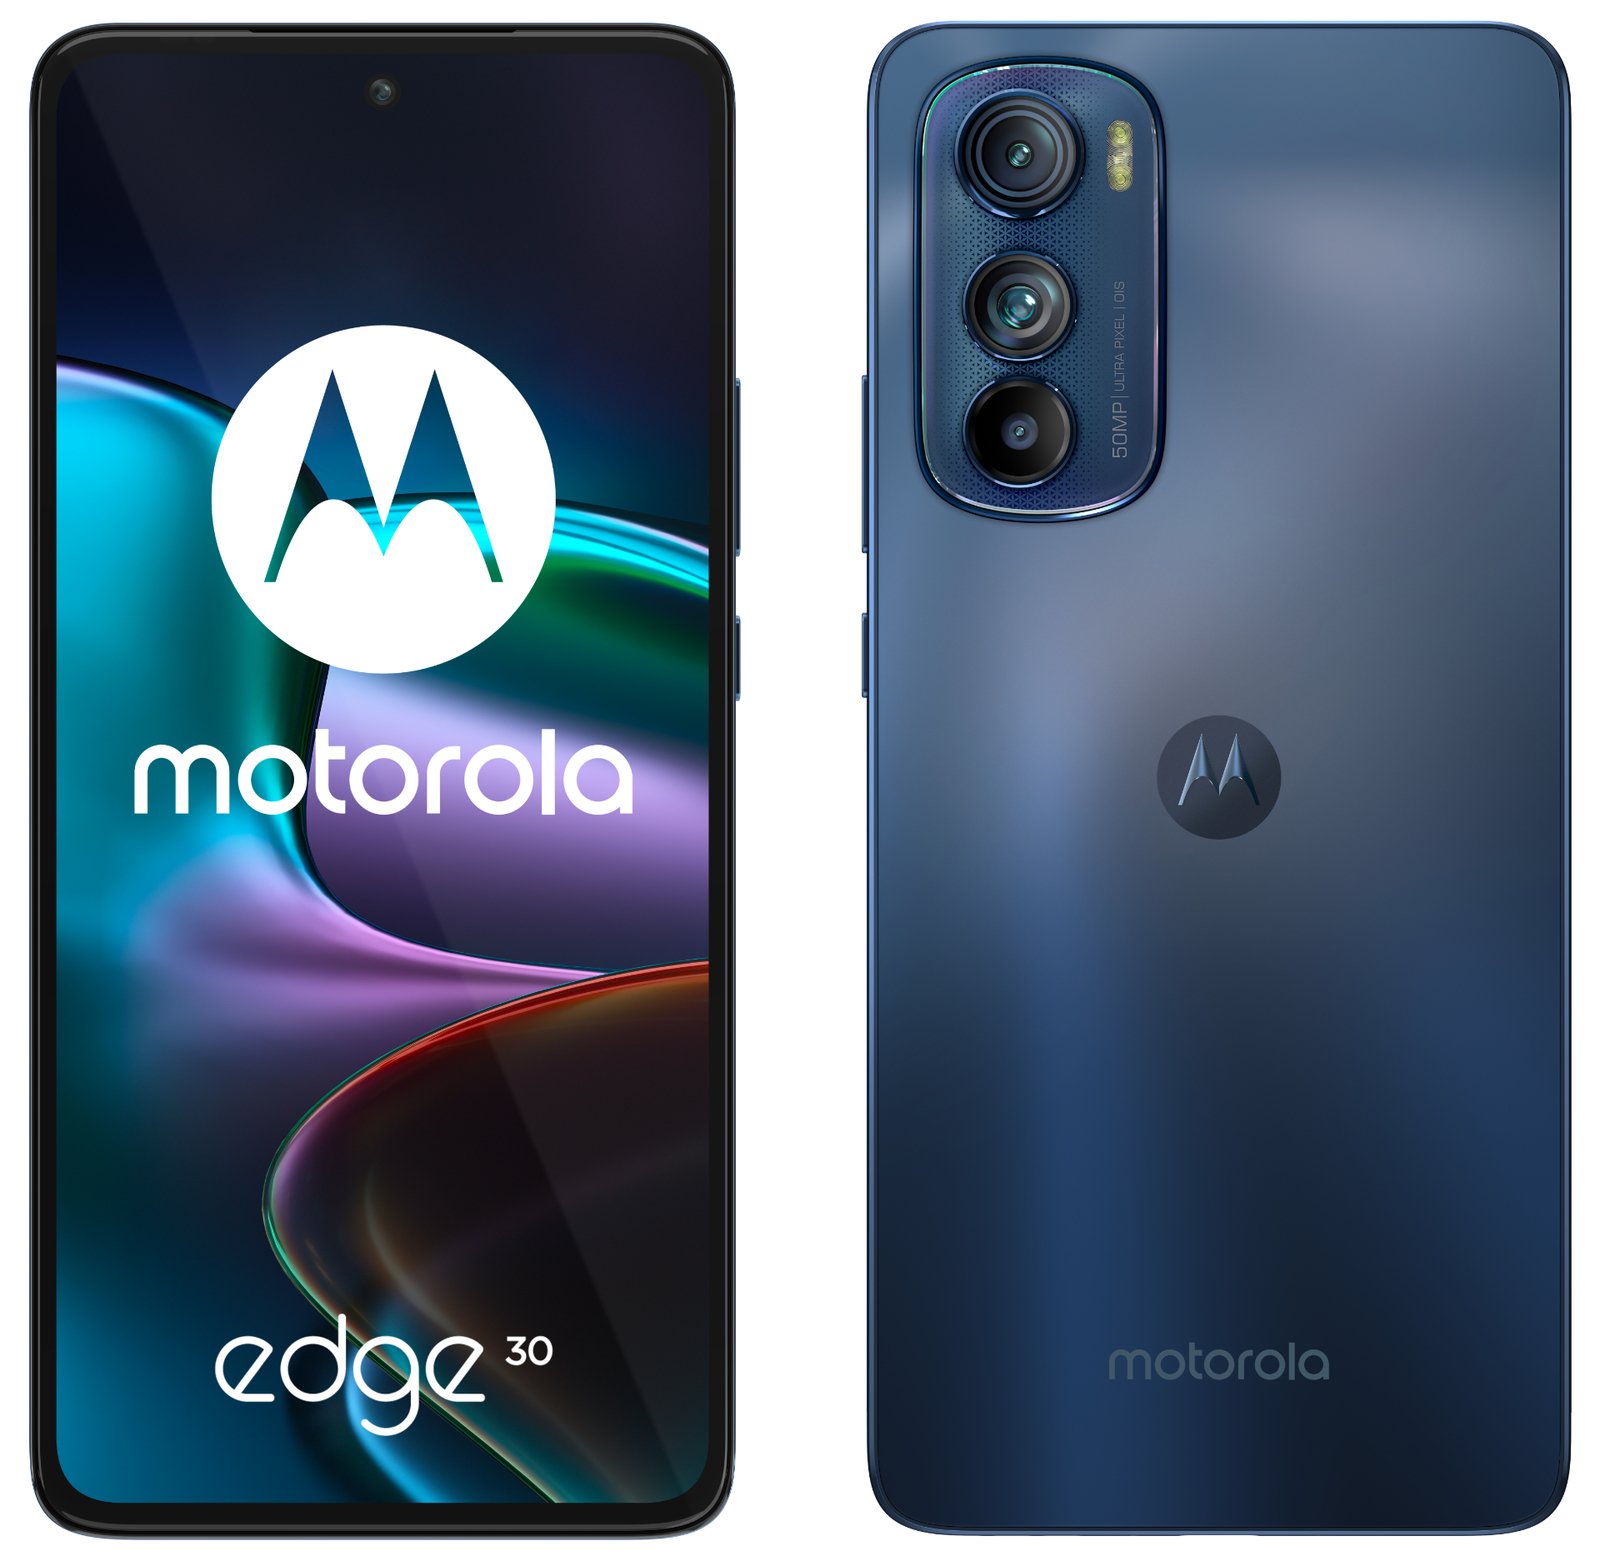 Motorola przedstawia edge 30. To najsmuklejszy smartfon z 5G